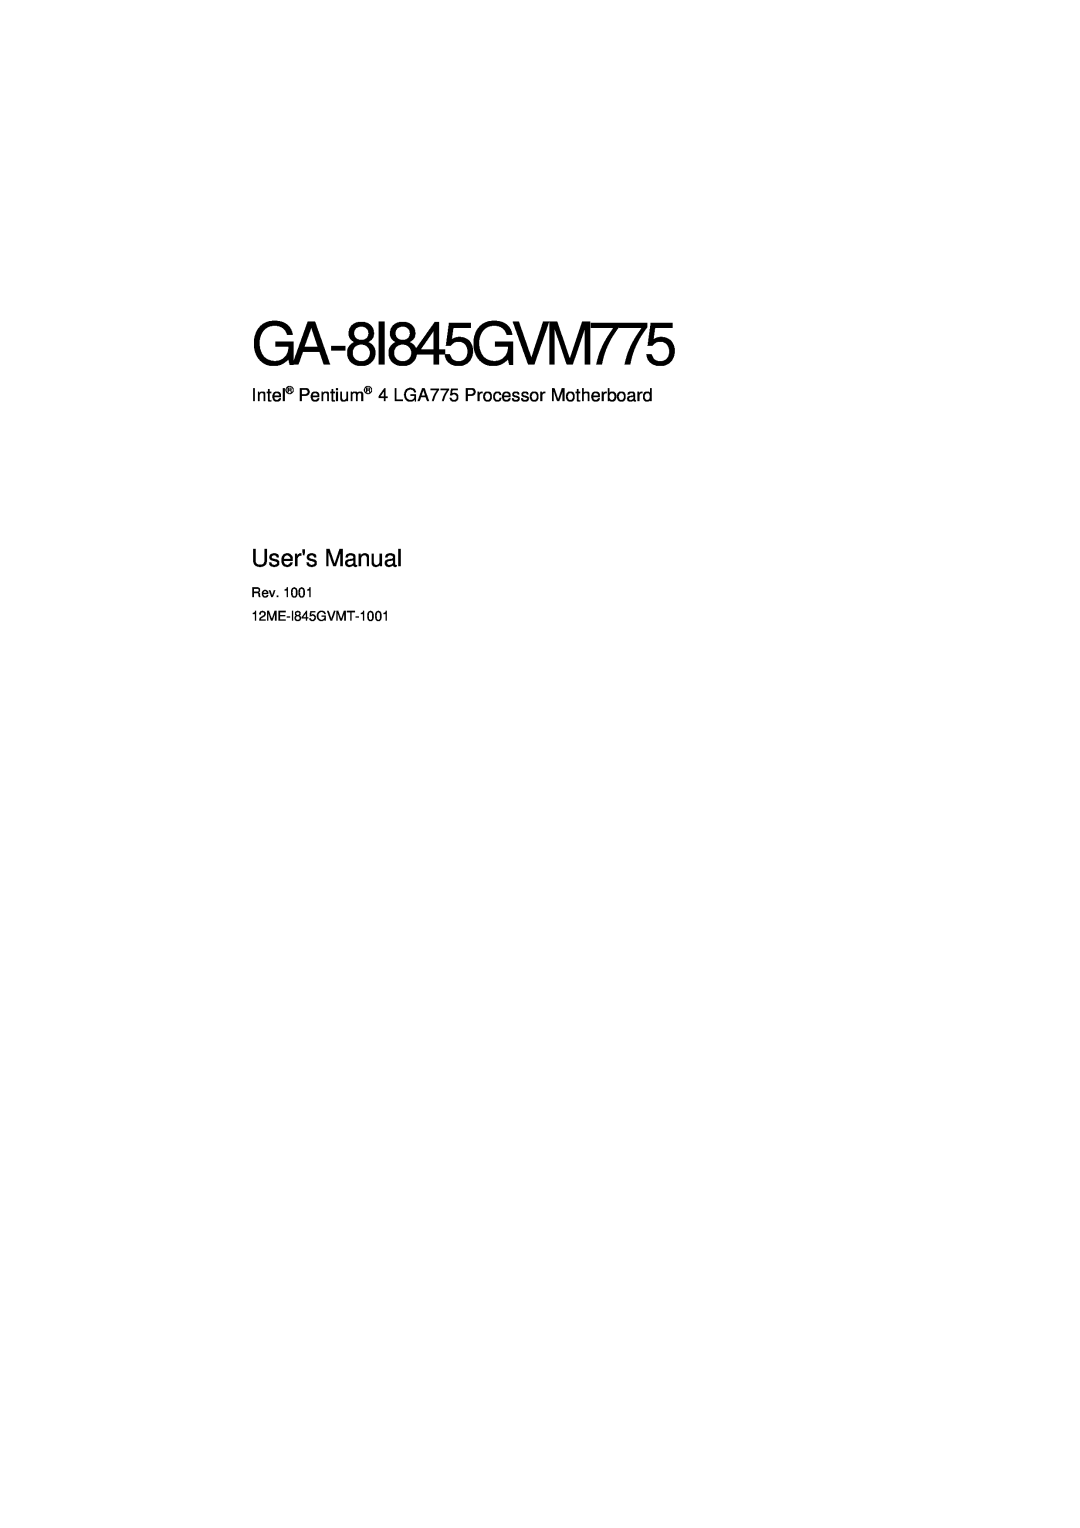 Gigabyte GA-8I845GVM775 user manual Users Manual, Intel Pentium 4 LGA775 Processor Motherboard 